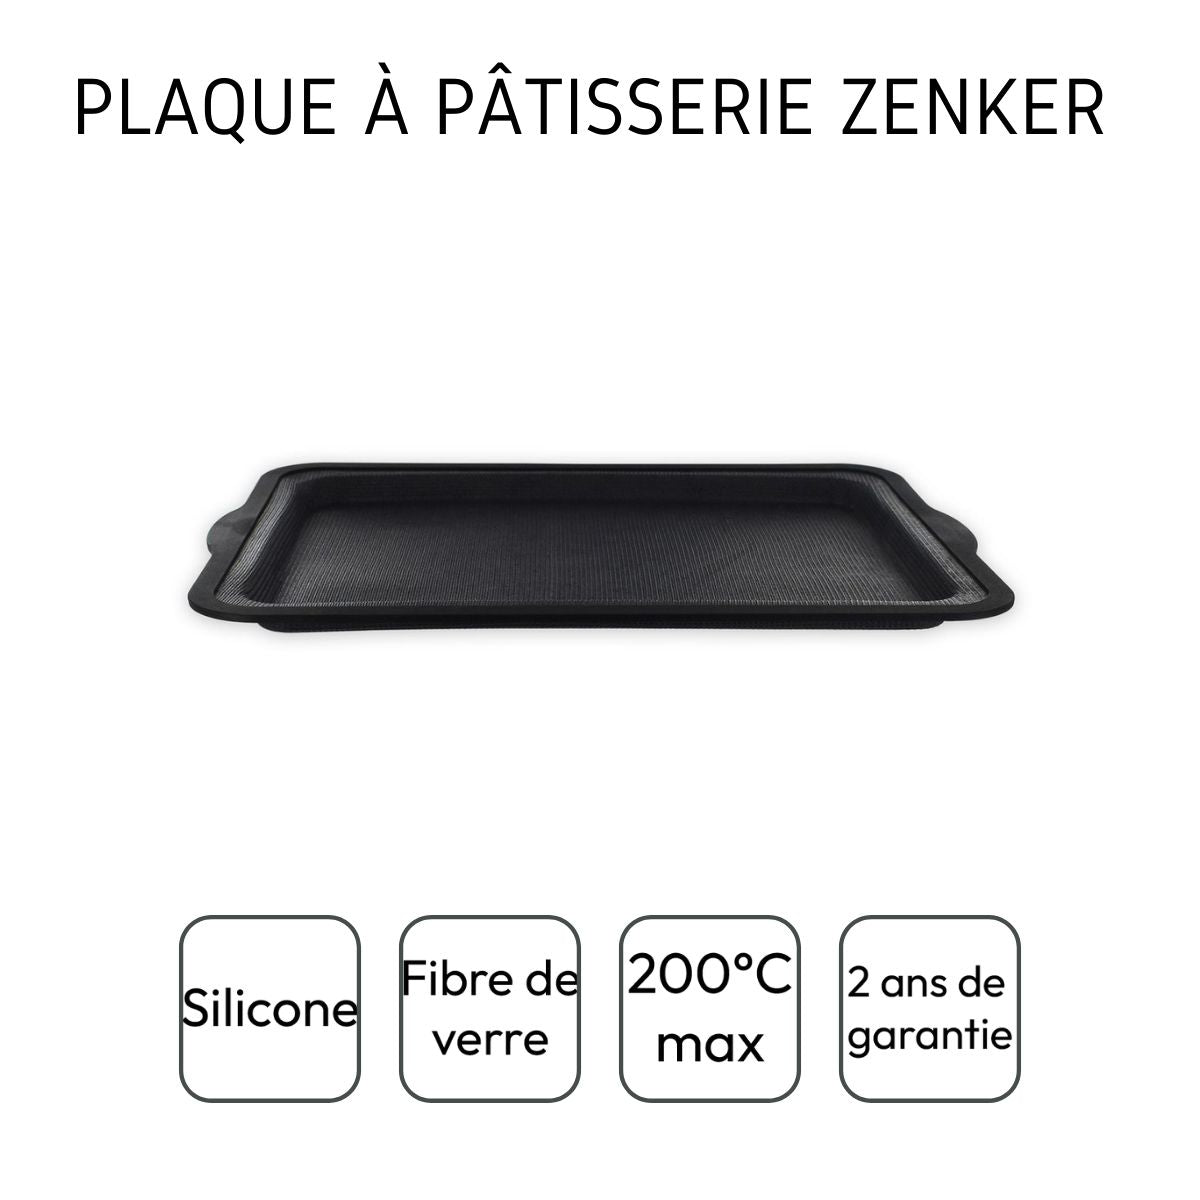 Plaque à pâtisserie rectangle Zenker Silicone fibre de verre